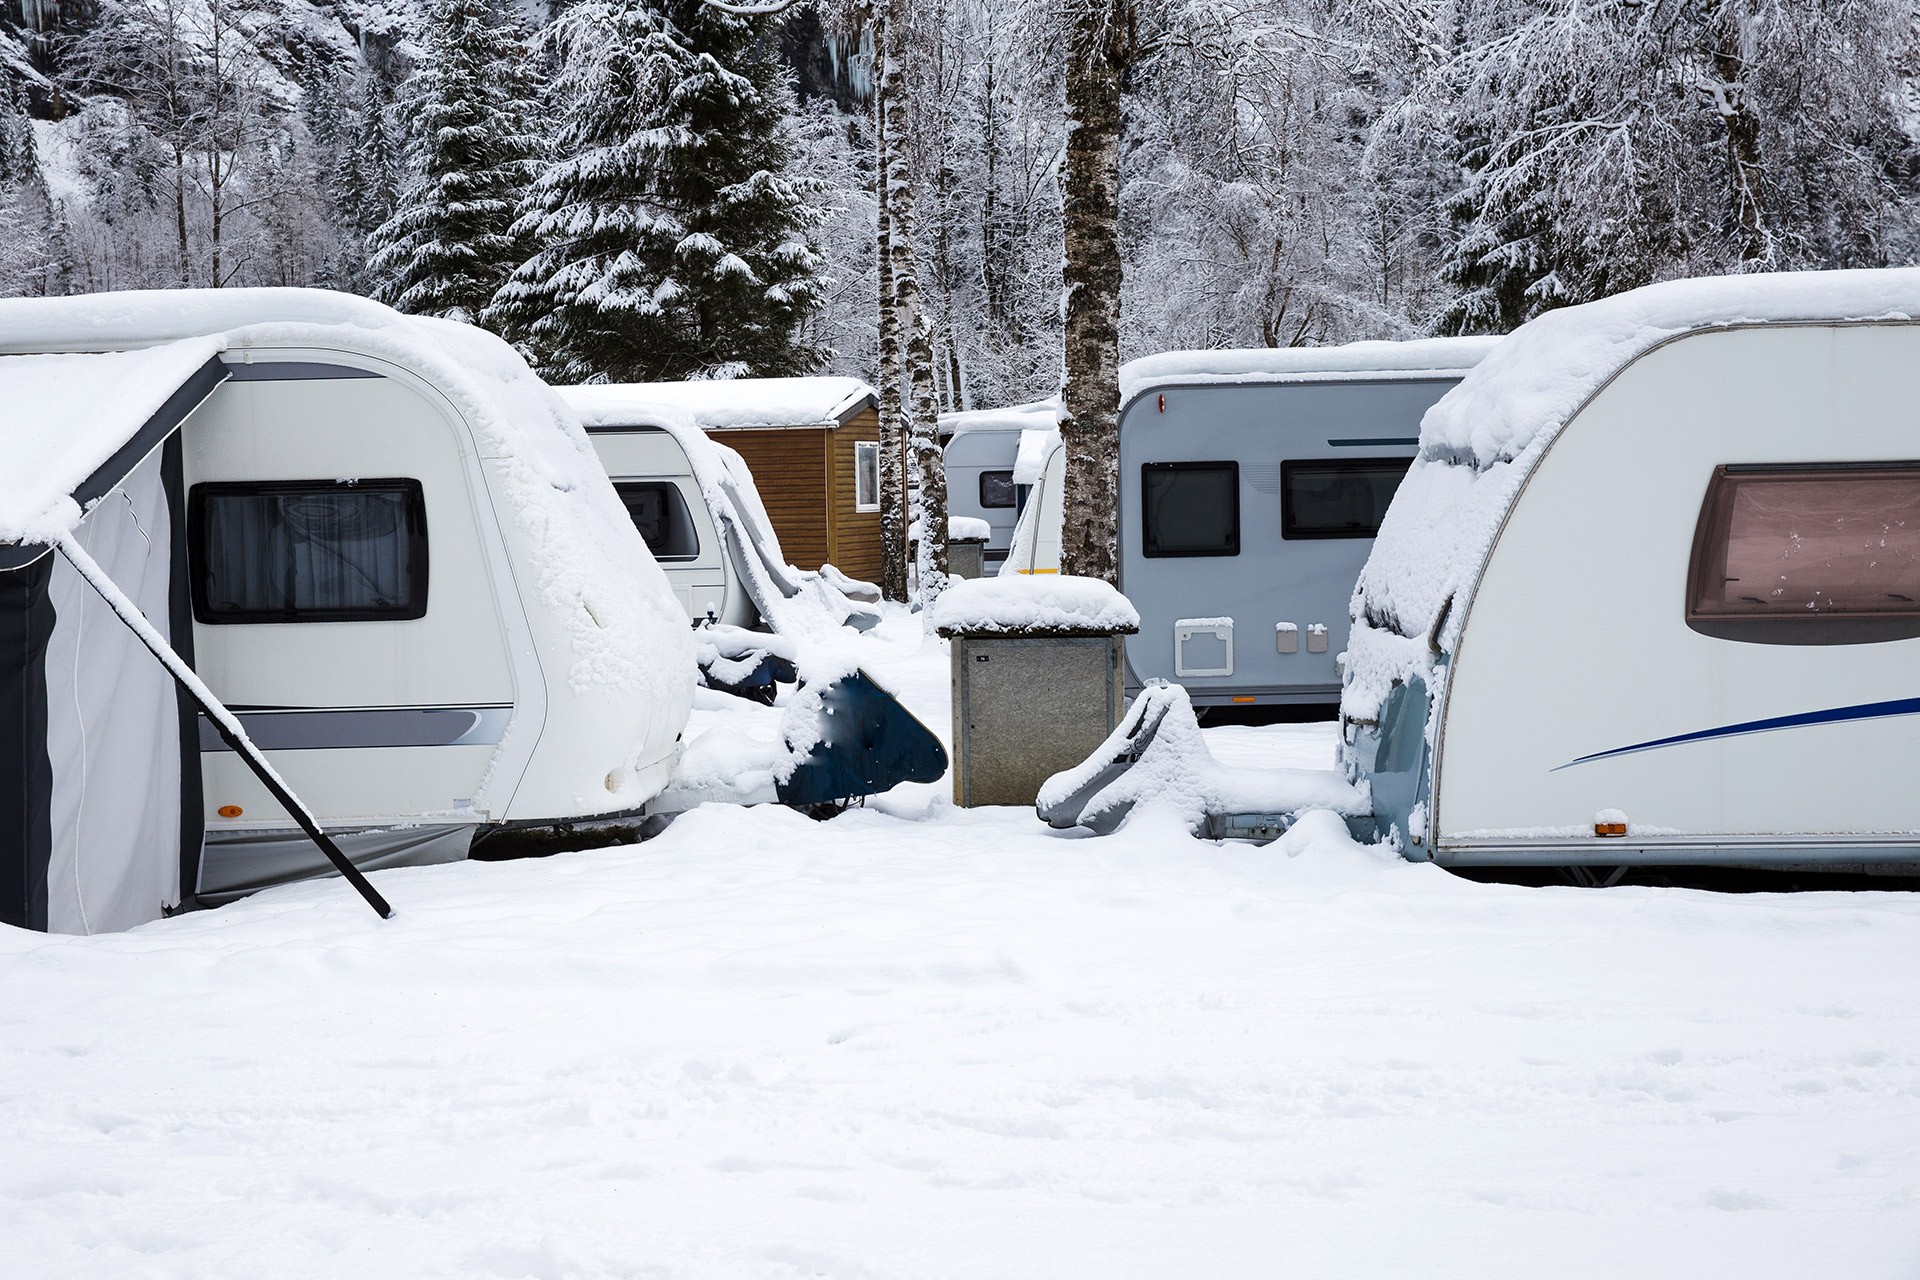 Camping mit dem Wohnwagen - Regeln und Tipps